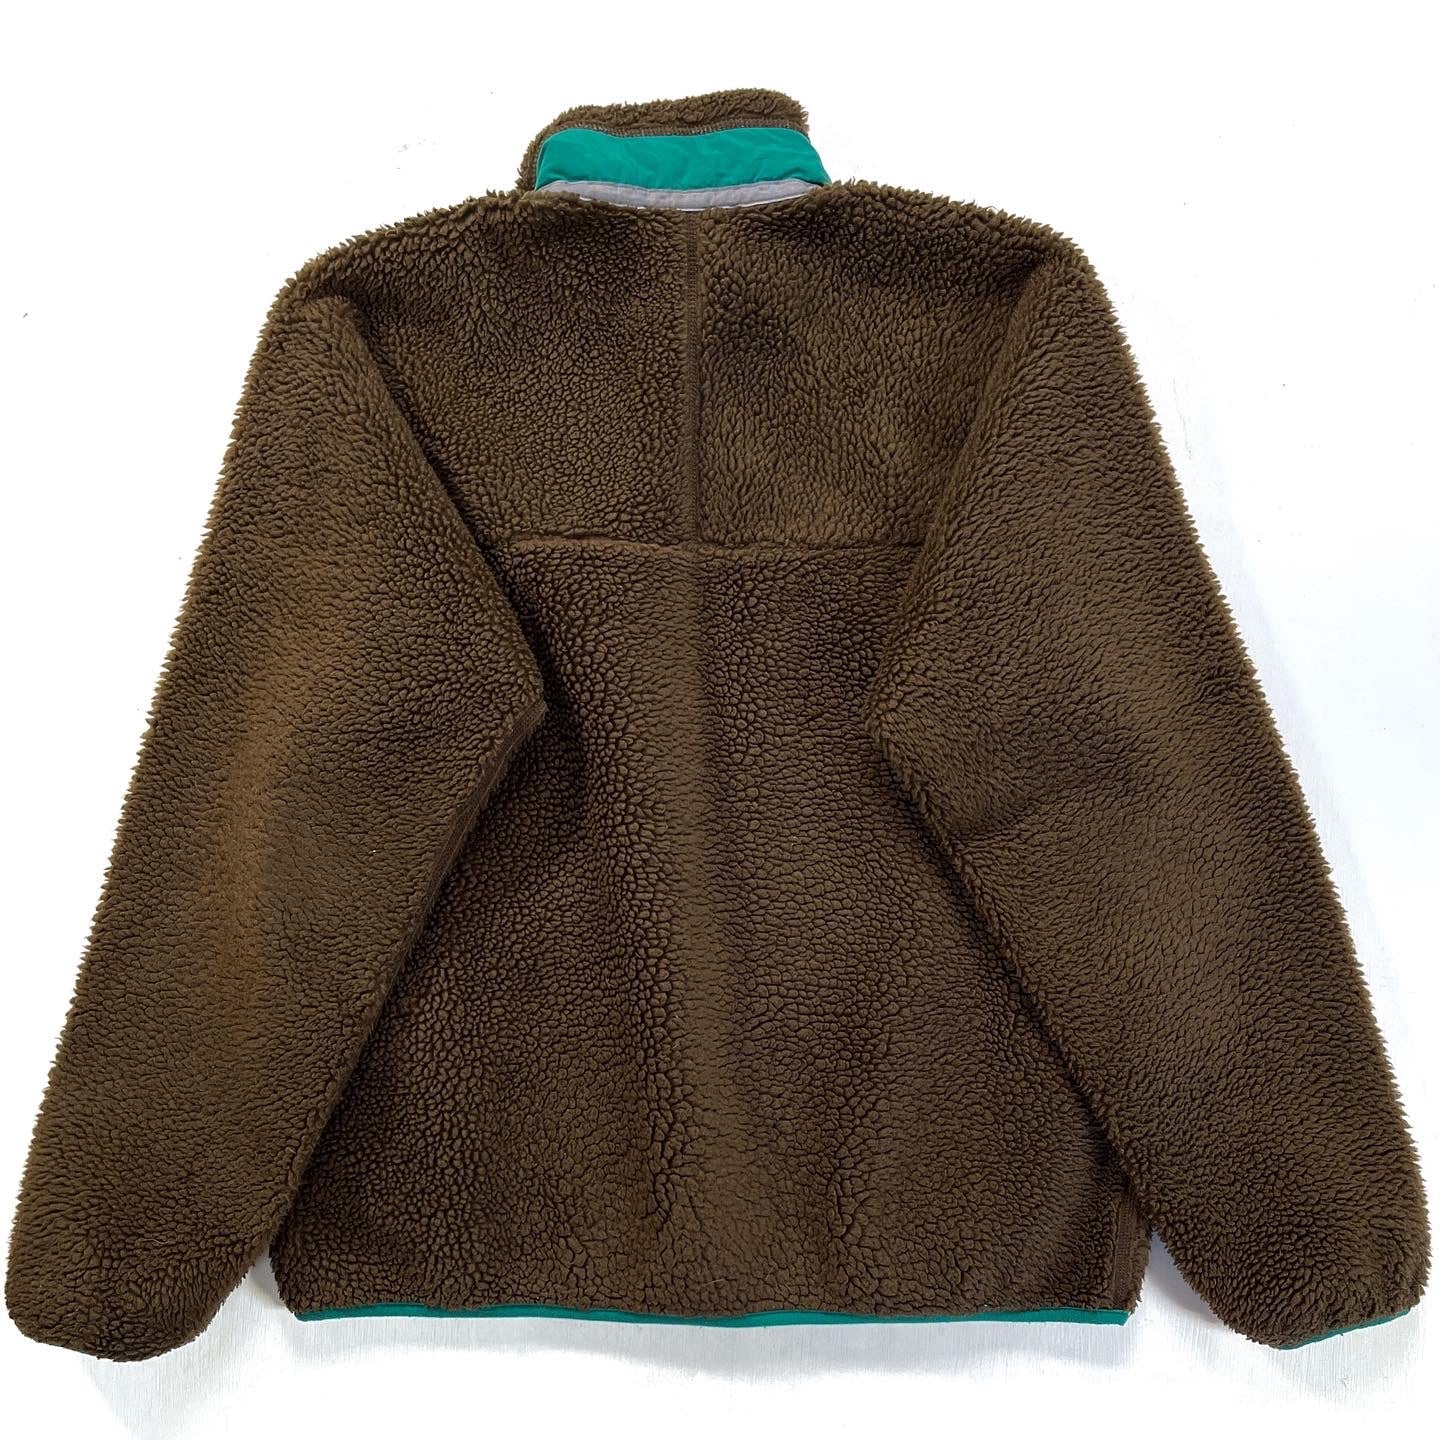 2012 Patagonia Classic Retro-X Fleece Jacket, Dark Walnut (M)